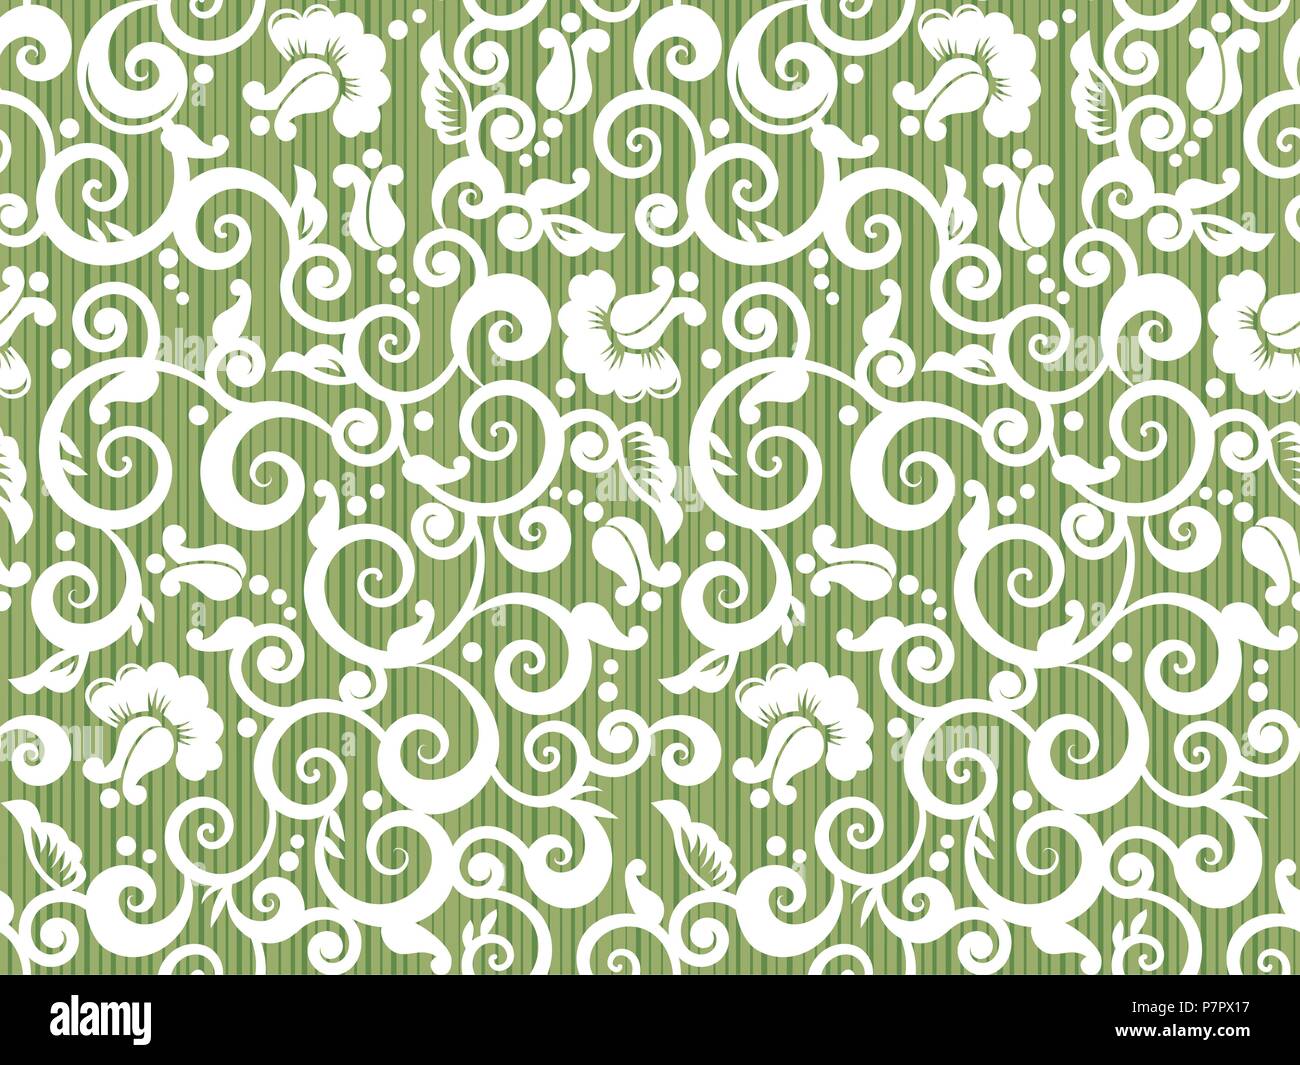 Nahtlose vintage Weiß und Grün swirly florales Muster mit abstrakten Rosen und Rosenblütenblätter, gleichermaßen für die Holzbearbeitung Stock Vektor